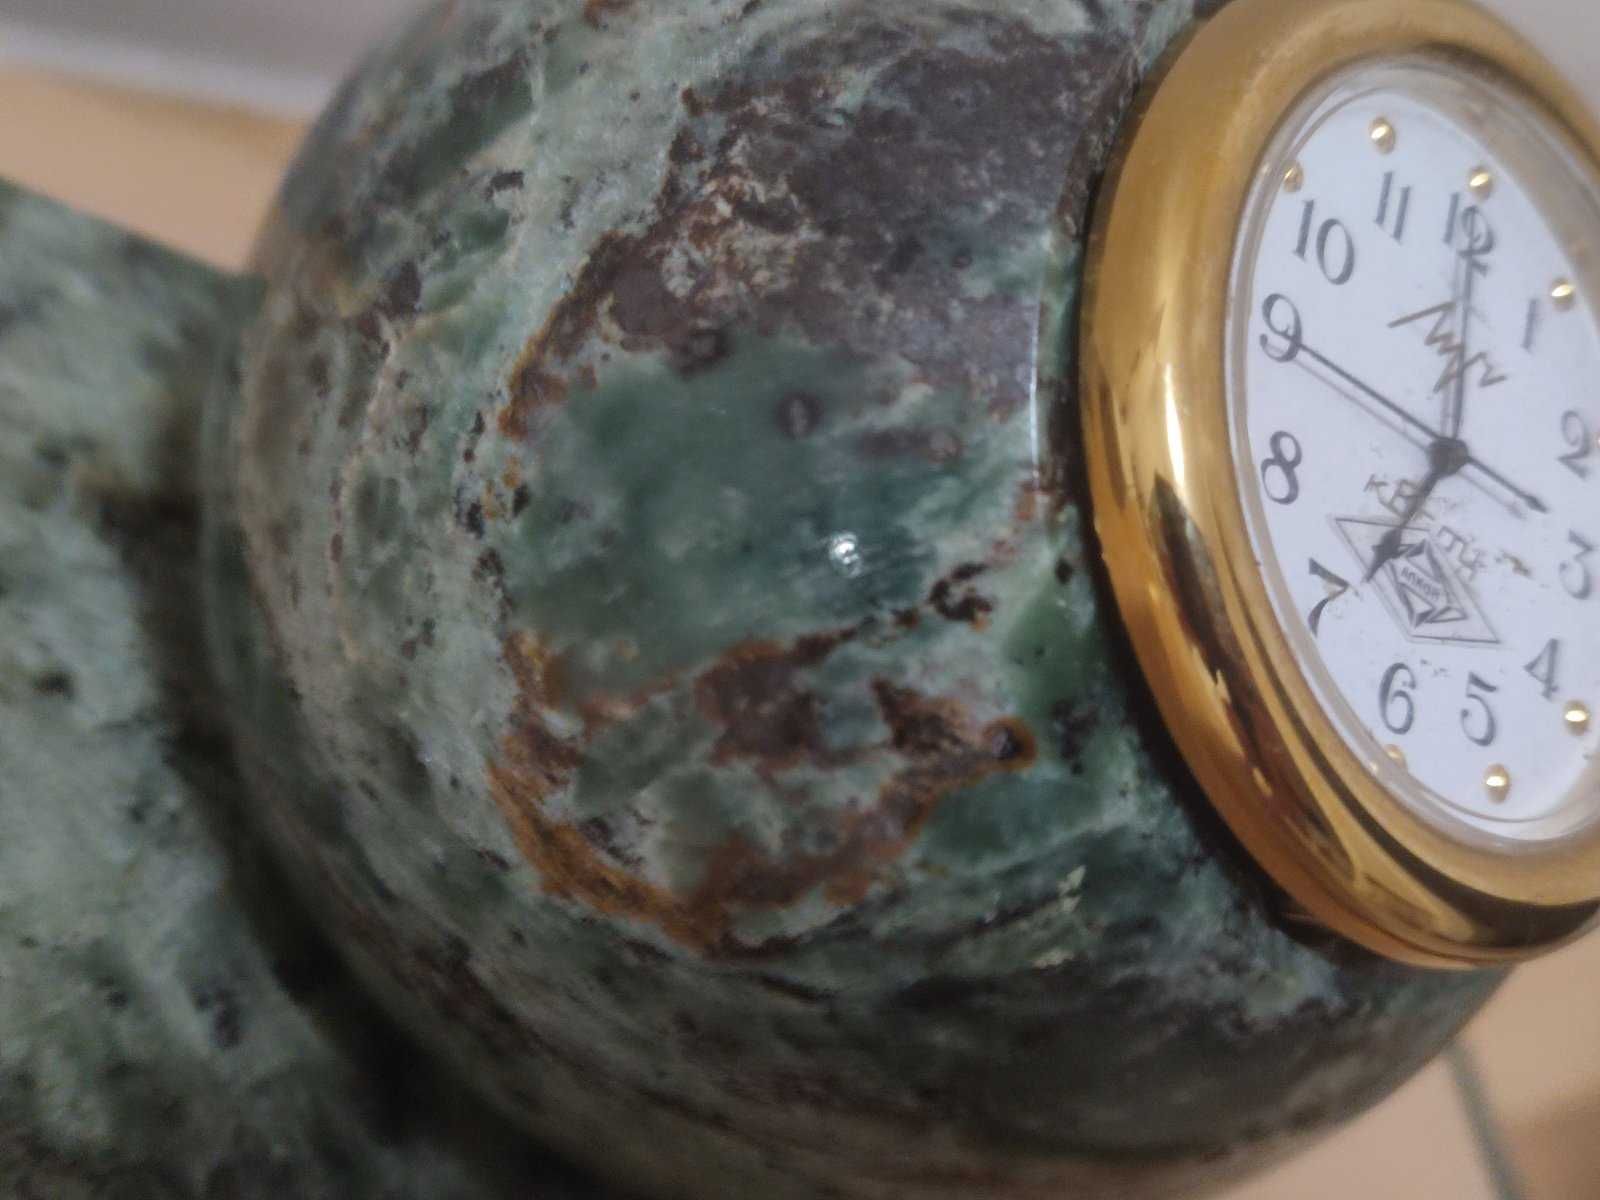 Подарочные настольные часы из натурального камня